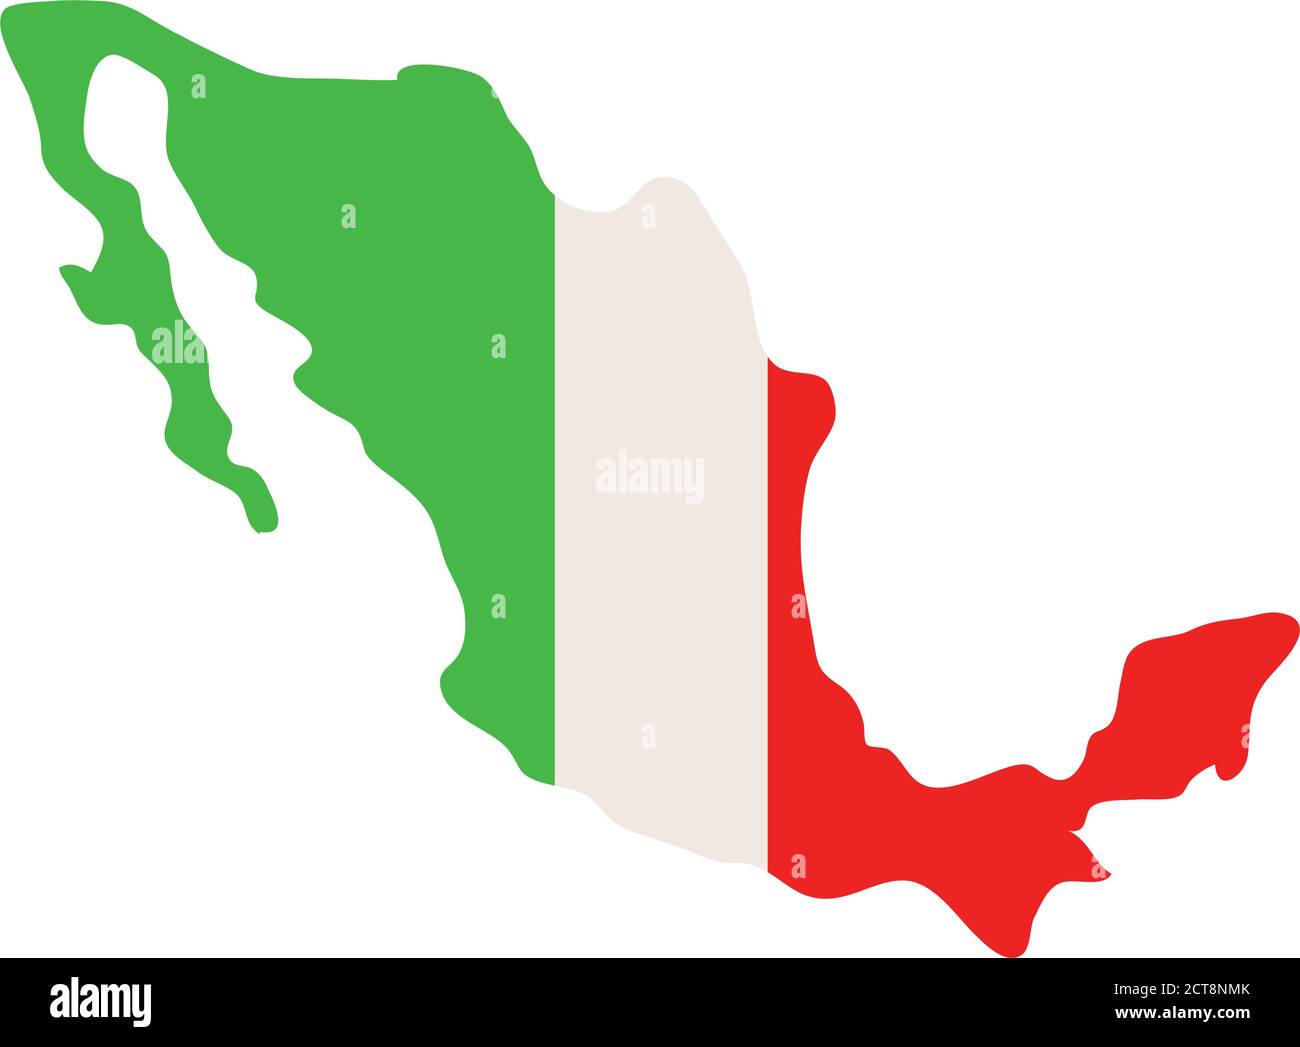 Republica mexicana mapa vector fotografías e imágenes de alta resolución -  Alamy